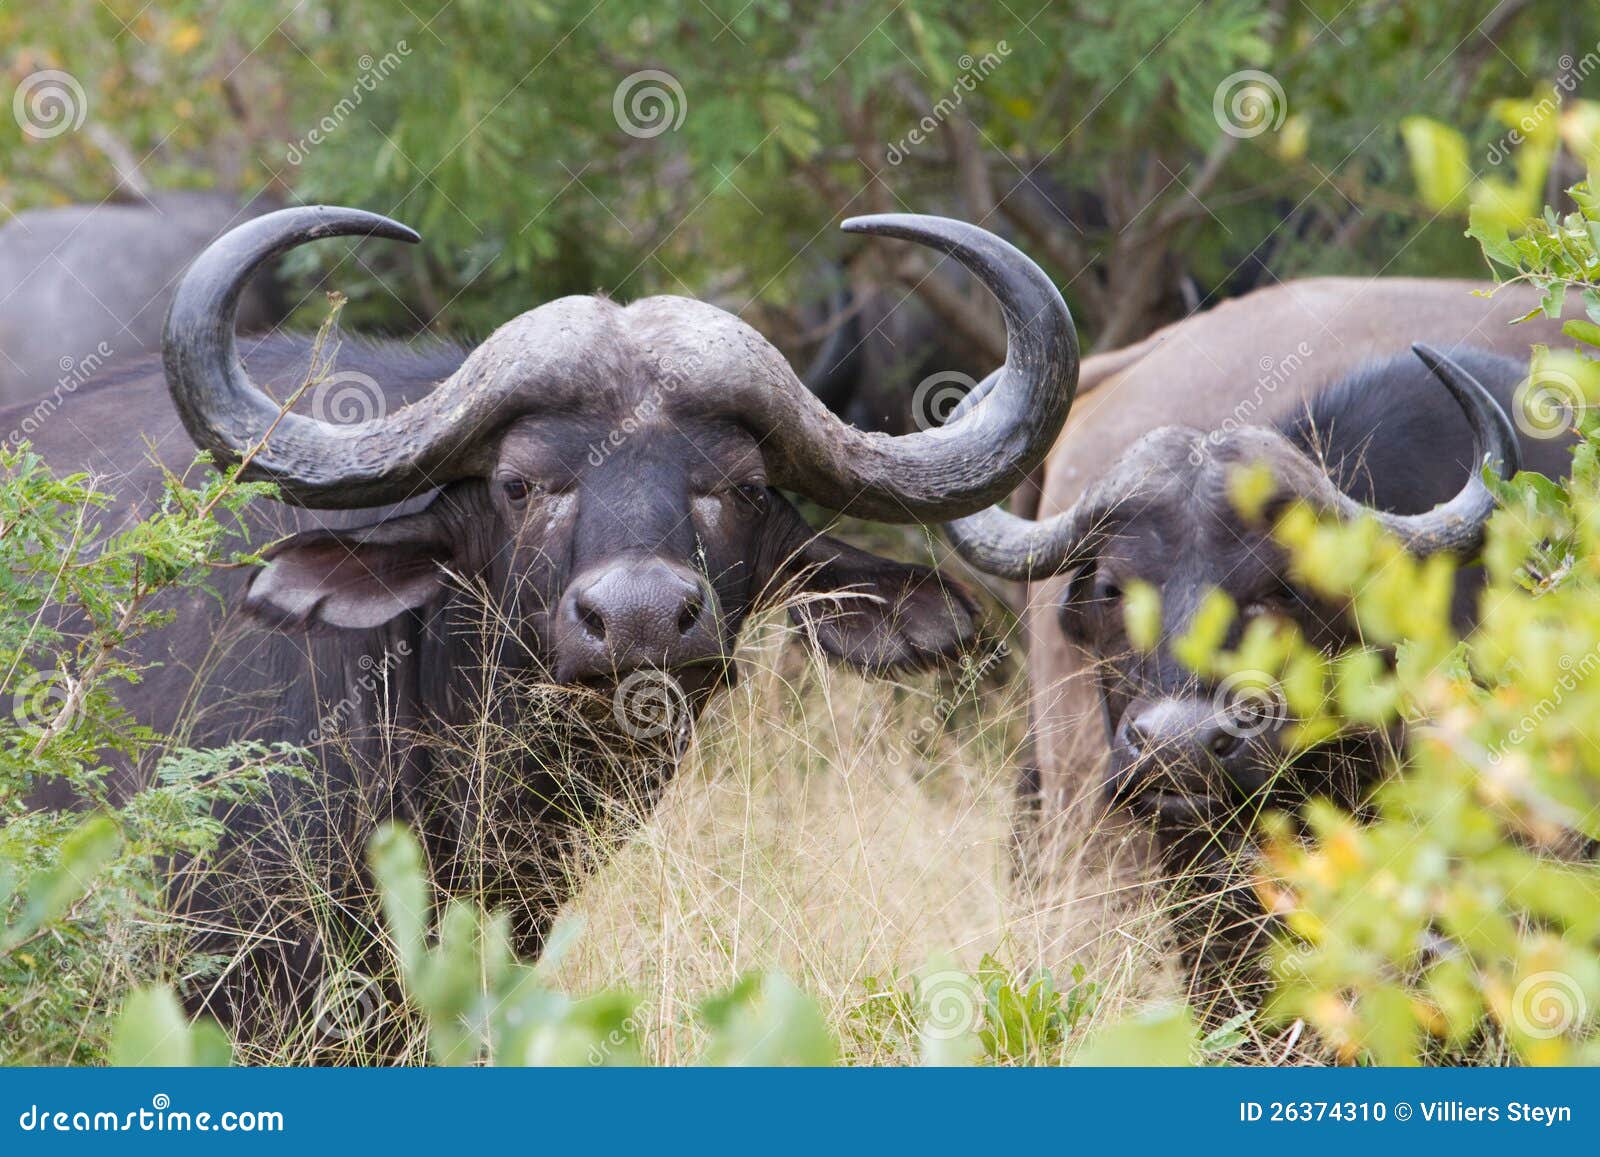 cow buffalo clipart - photo #45